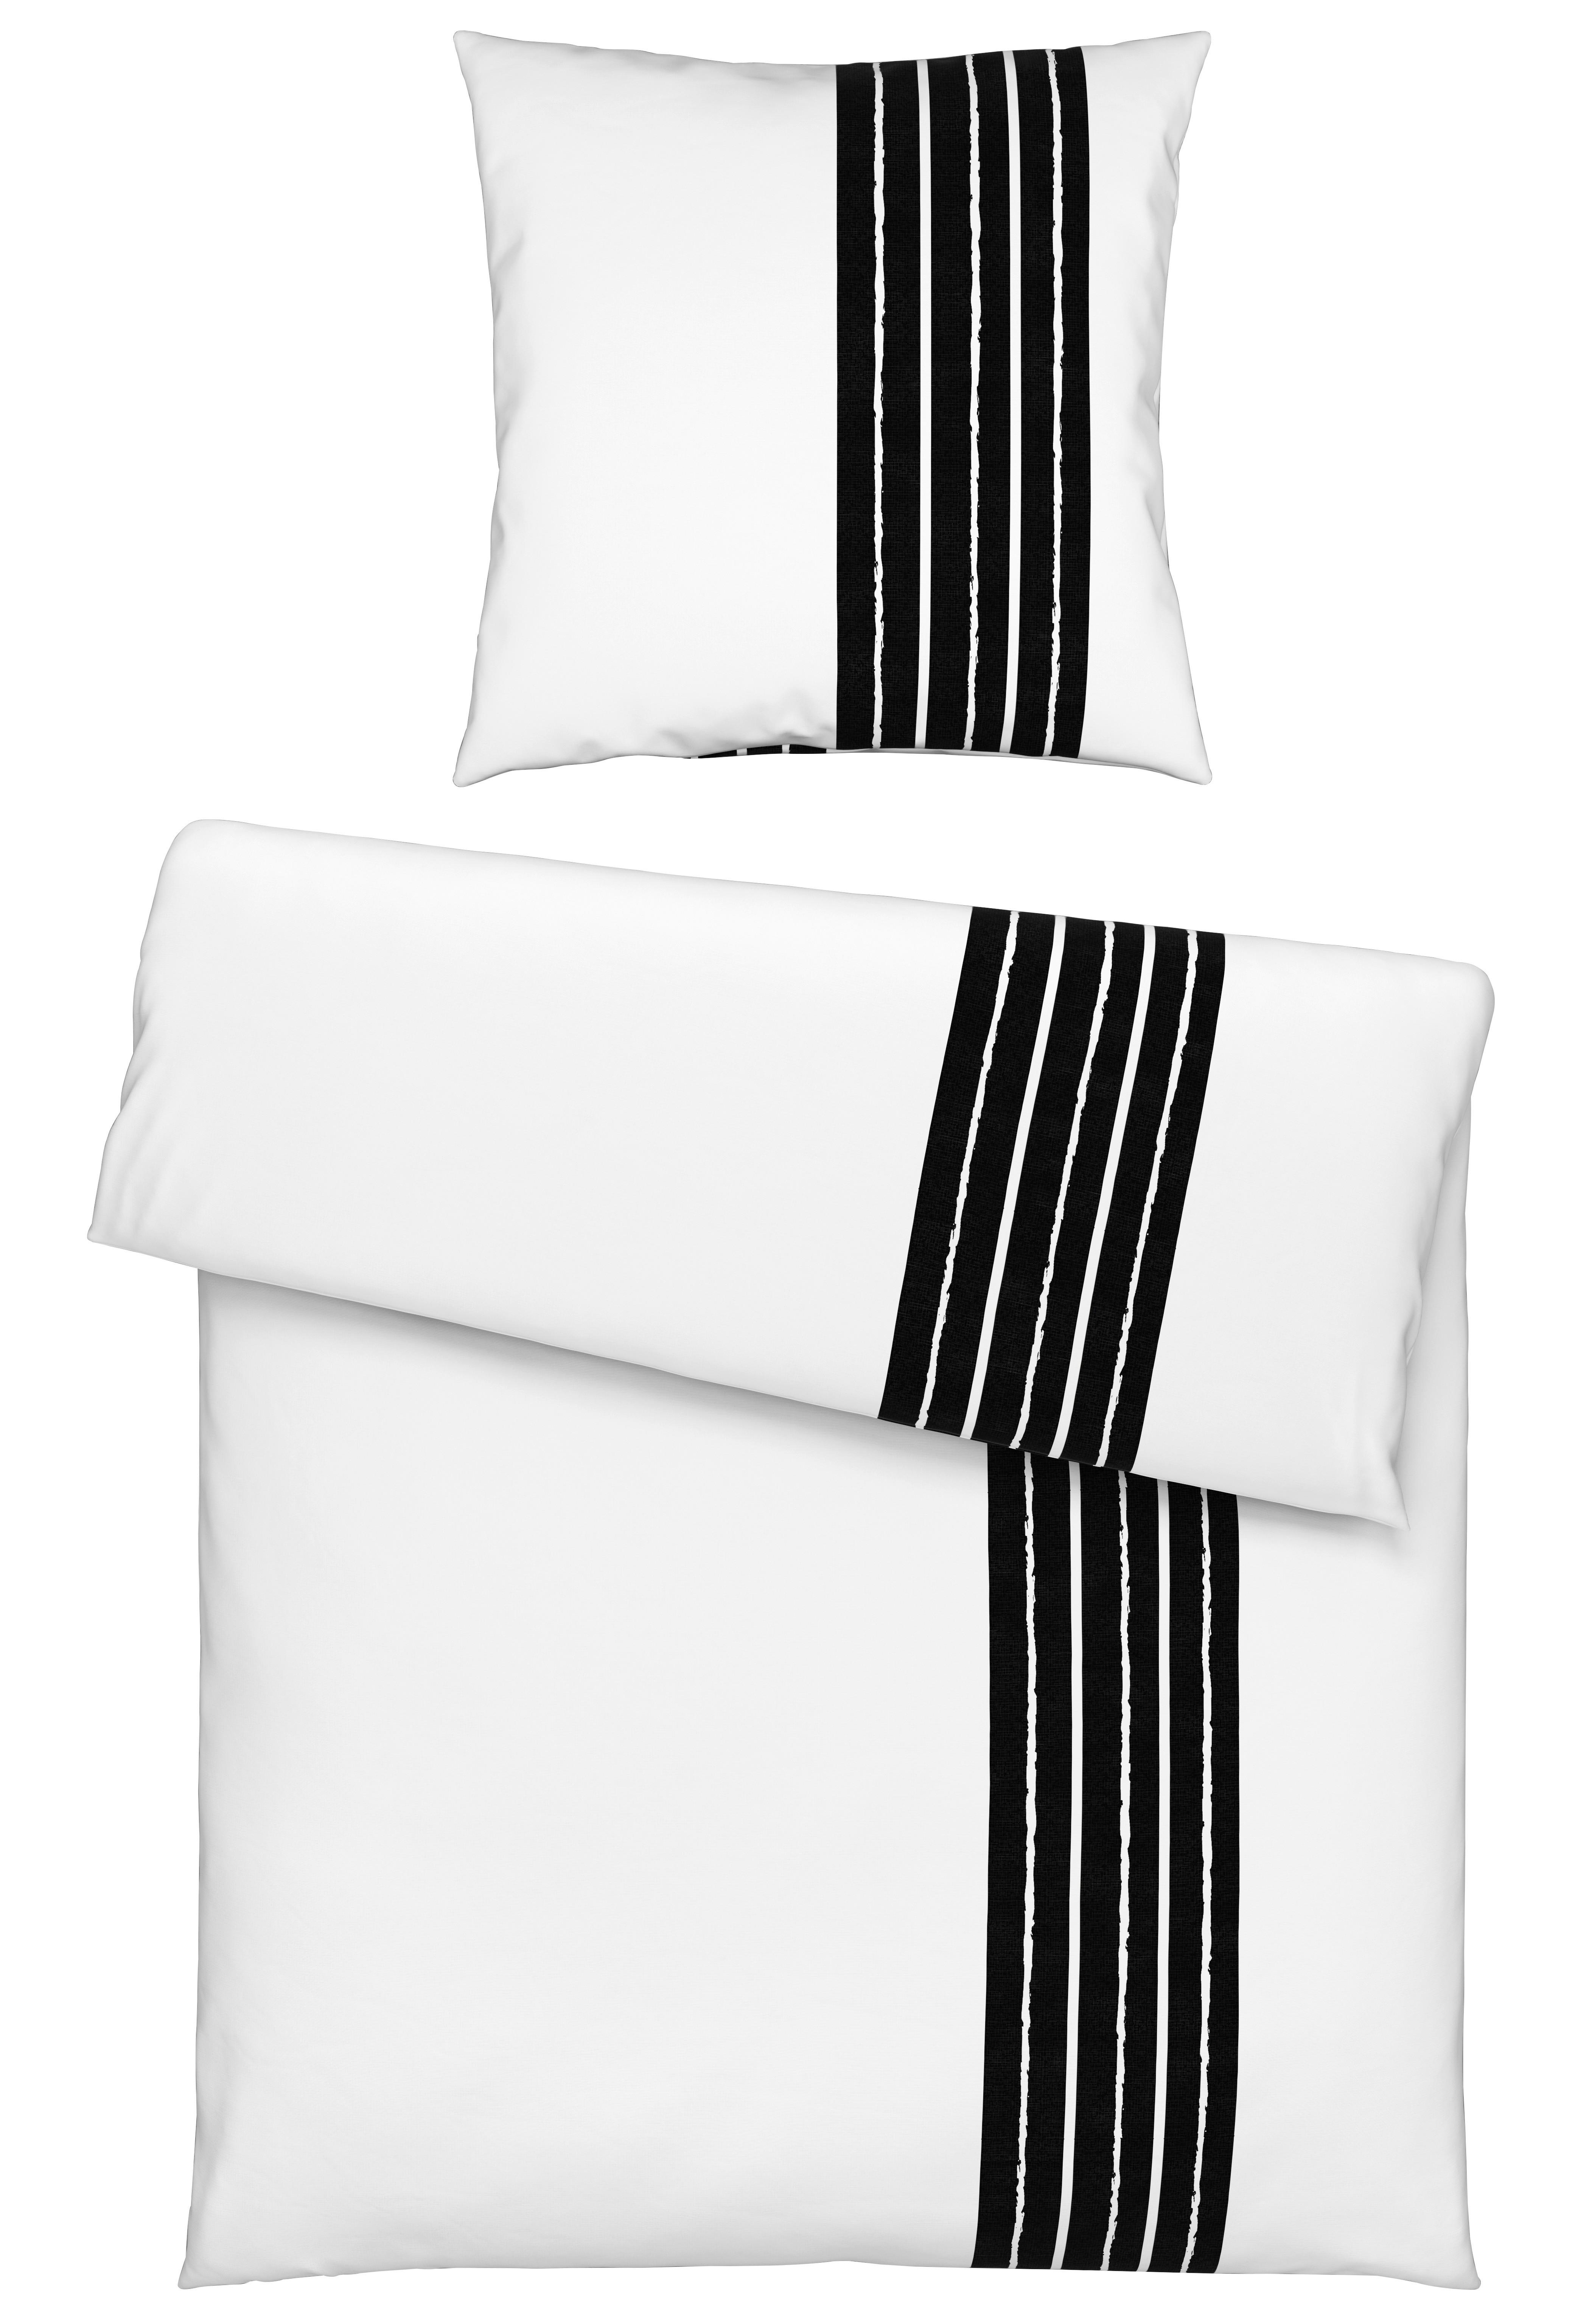 Bettwäsche Stripes in Weiß ca. 135x200cm - Weiß, MODERN, Textil (135/200cm) - Modern Living